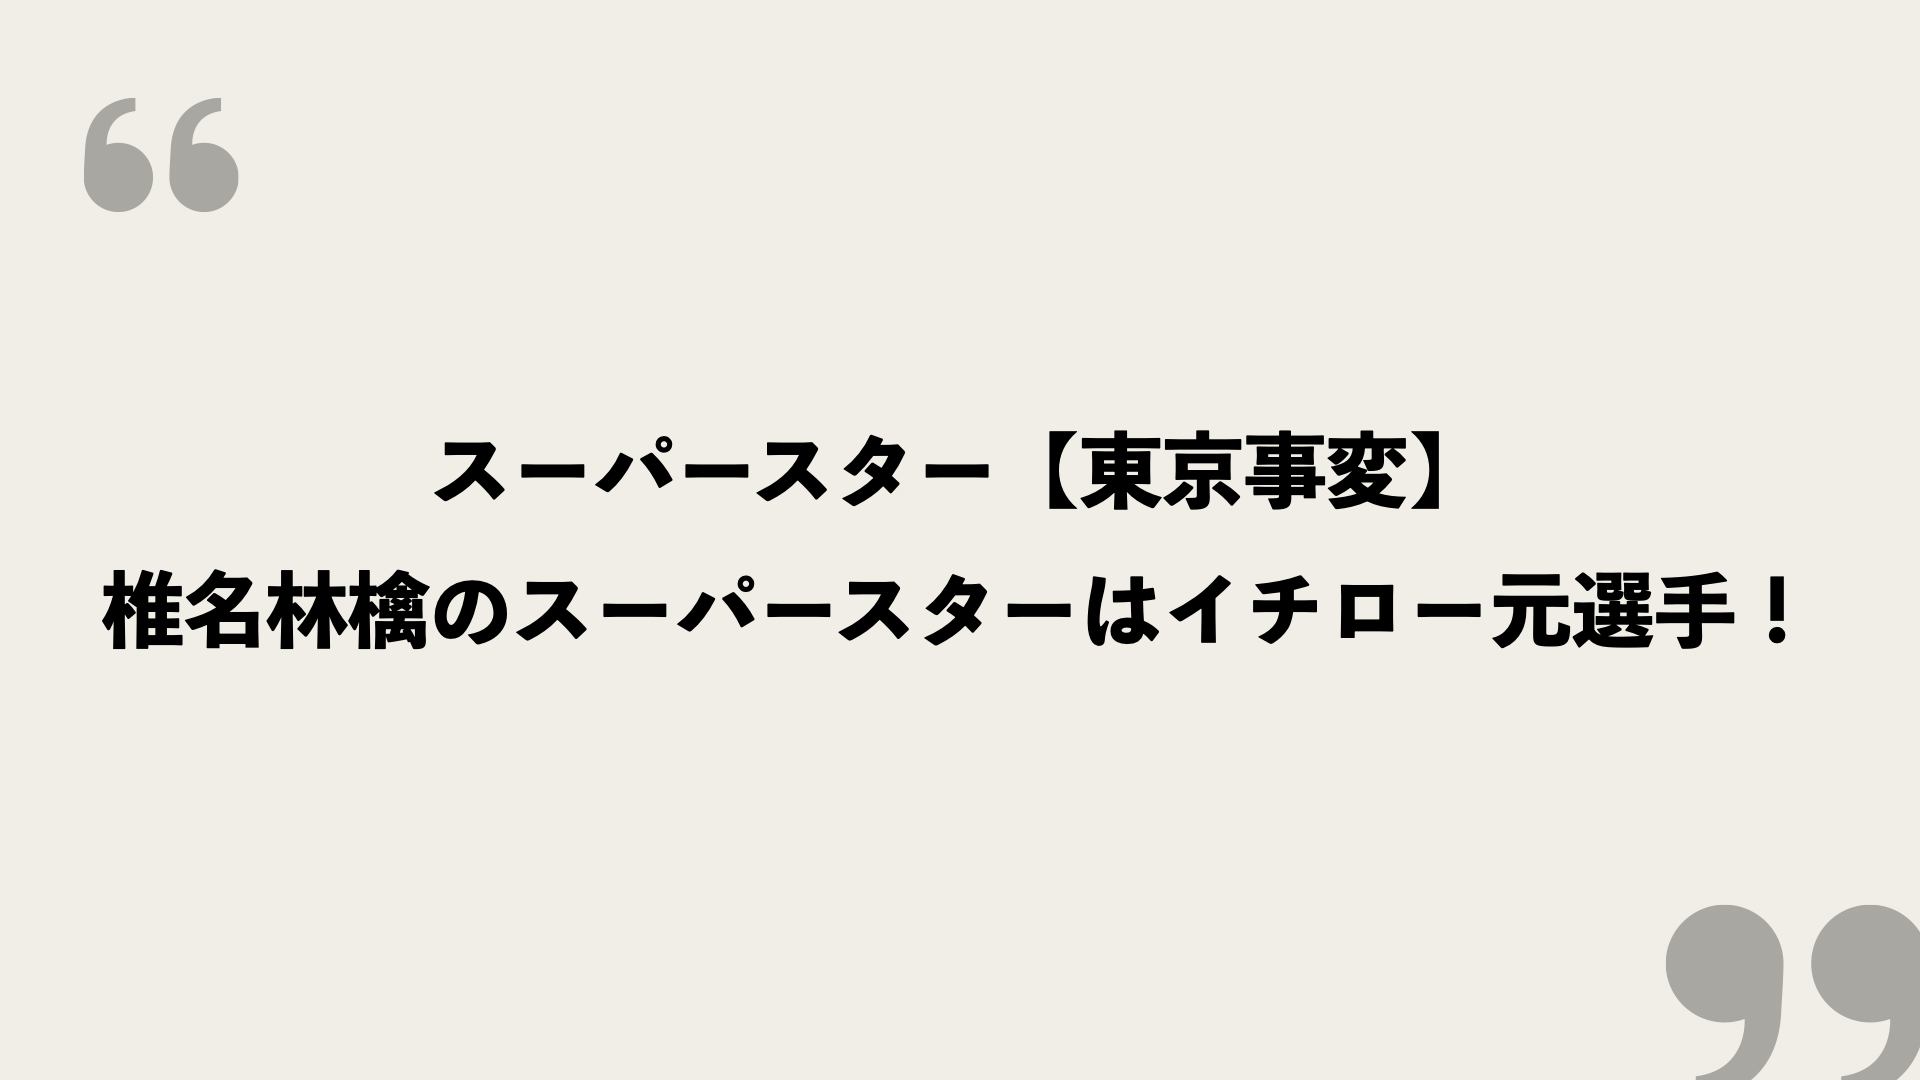 スーパースター 東京事変 歌詞の意味を考察 椎名林檎のスーパースターはイチロー元選手 Framu Media